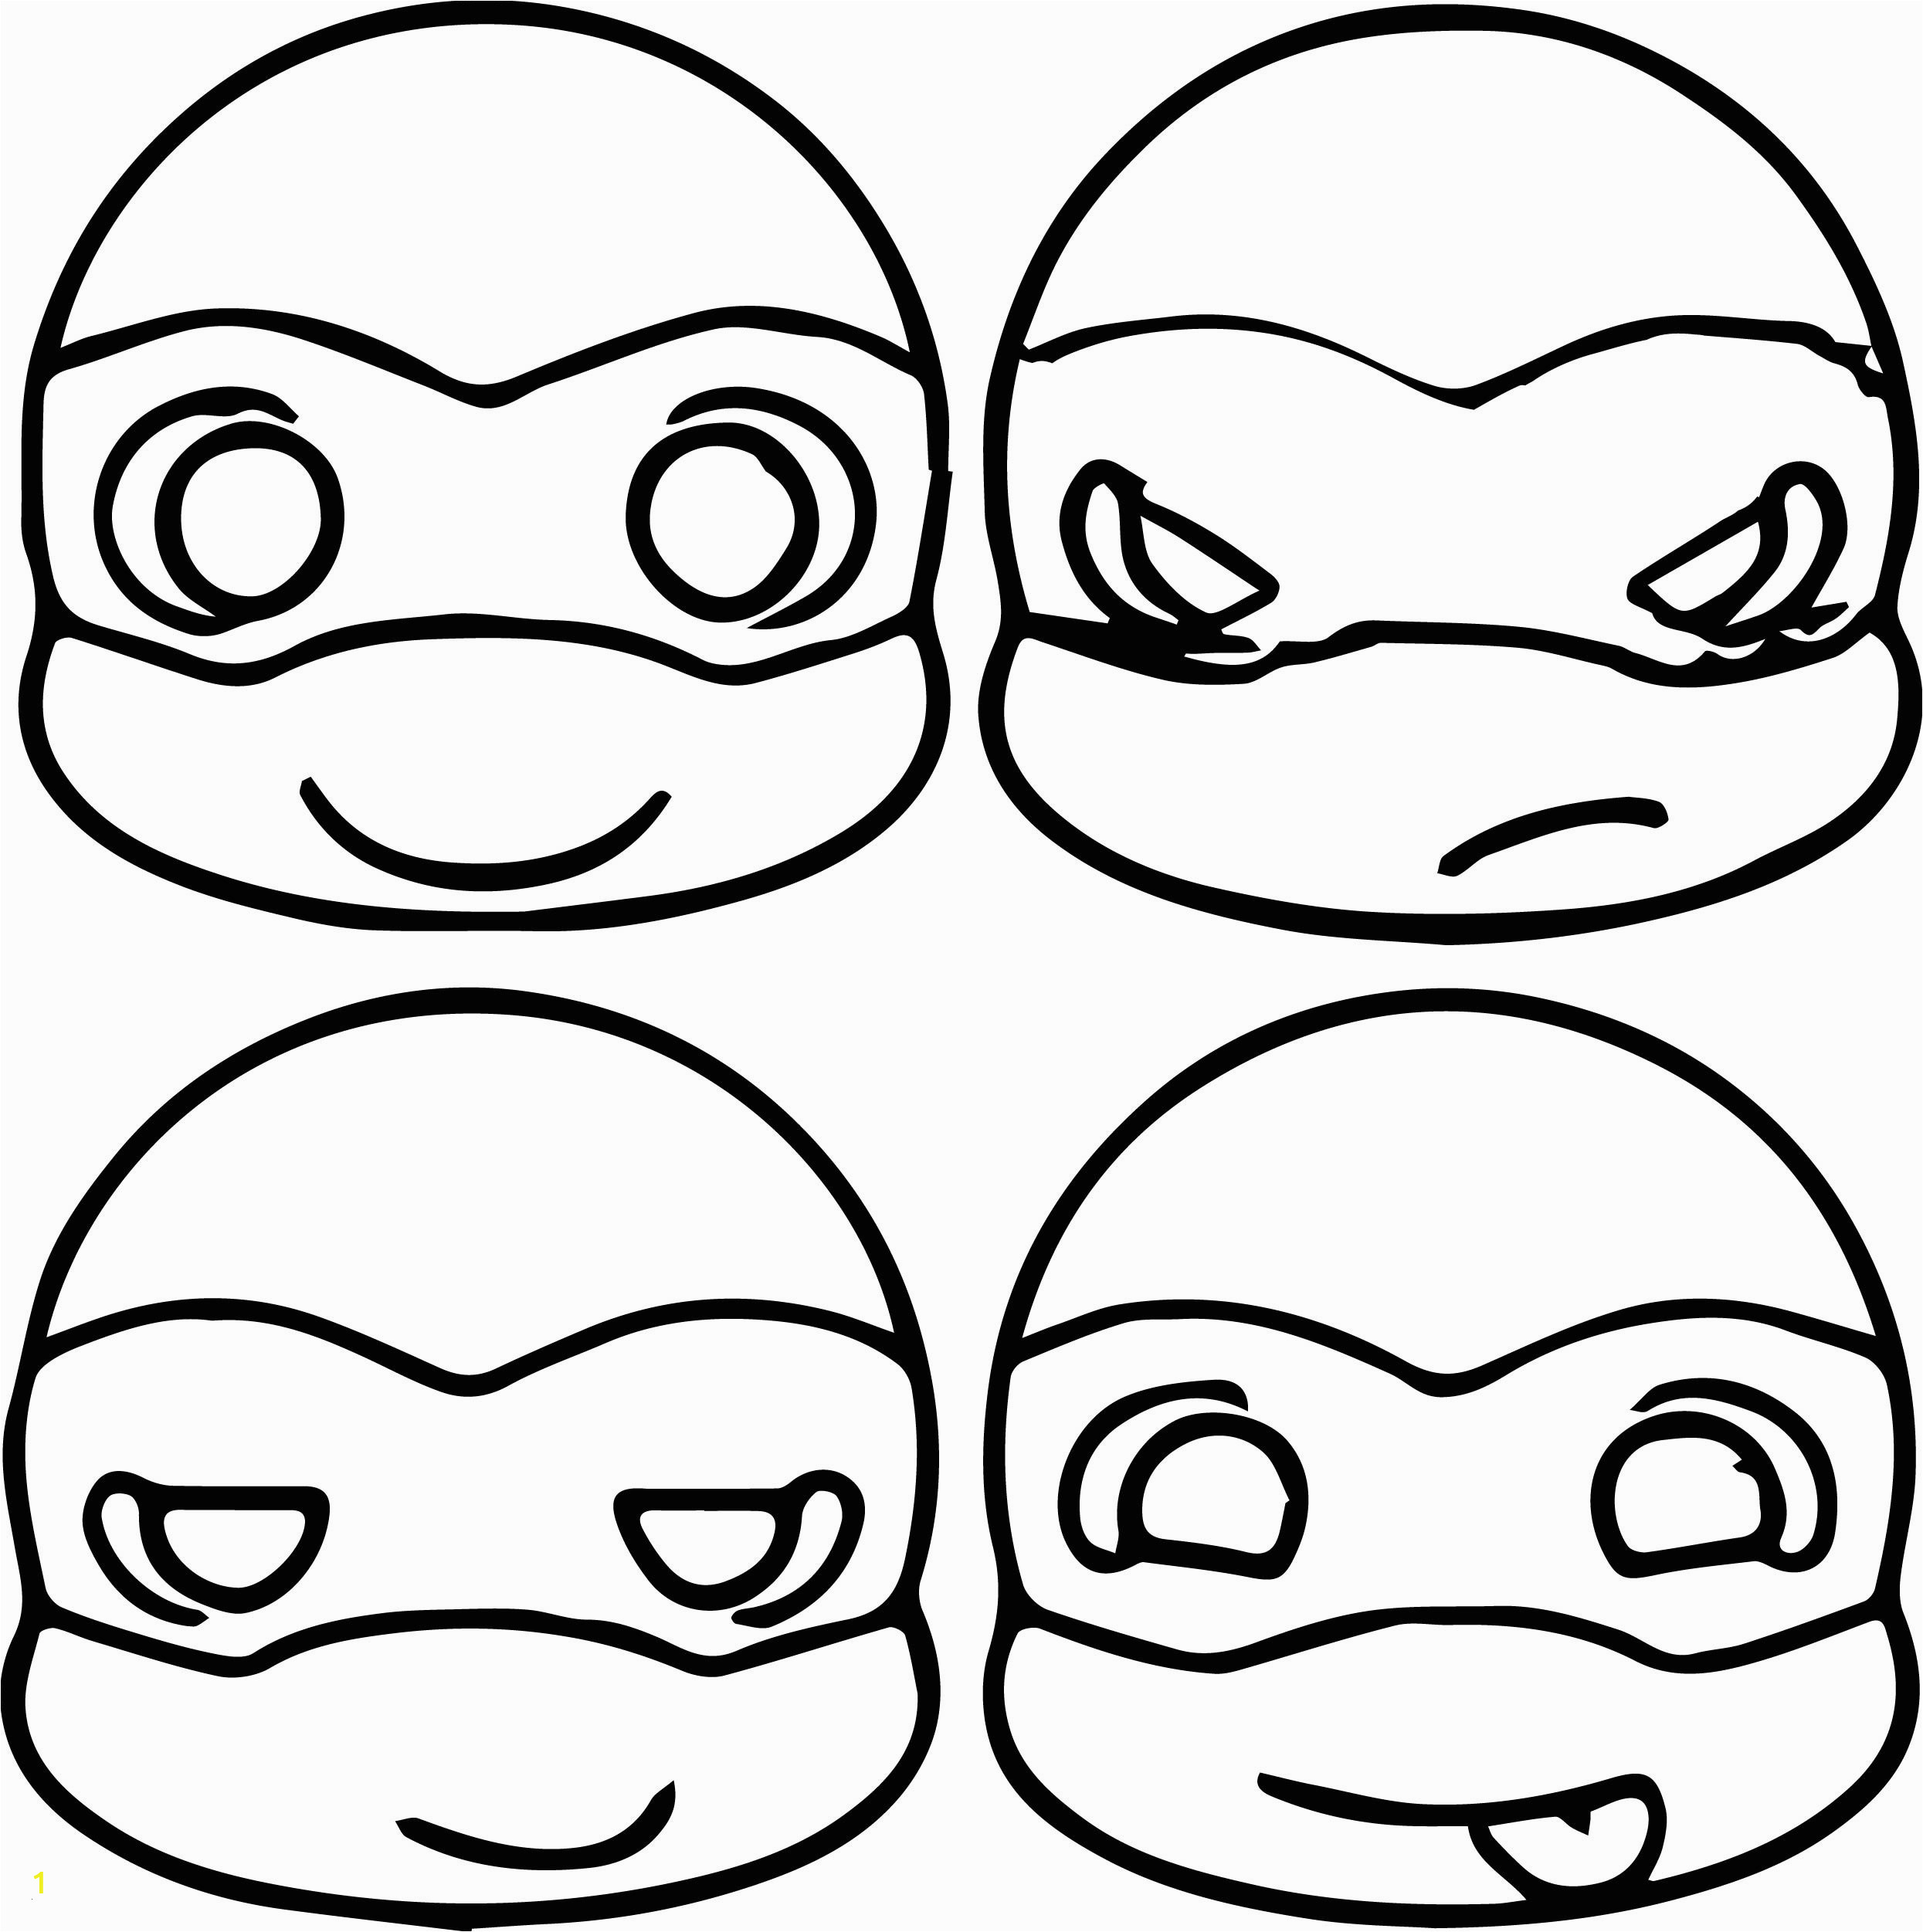 Free Printable Ninja Turtle Coloring Pages Nickelodeon Teenage Mutant Ninja Turtles Coloring Pages